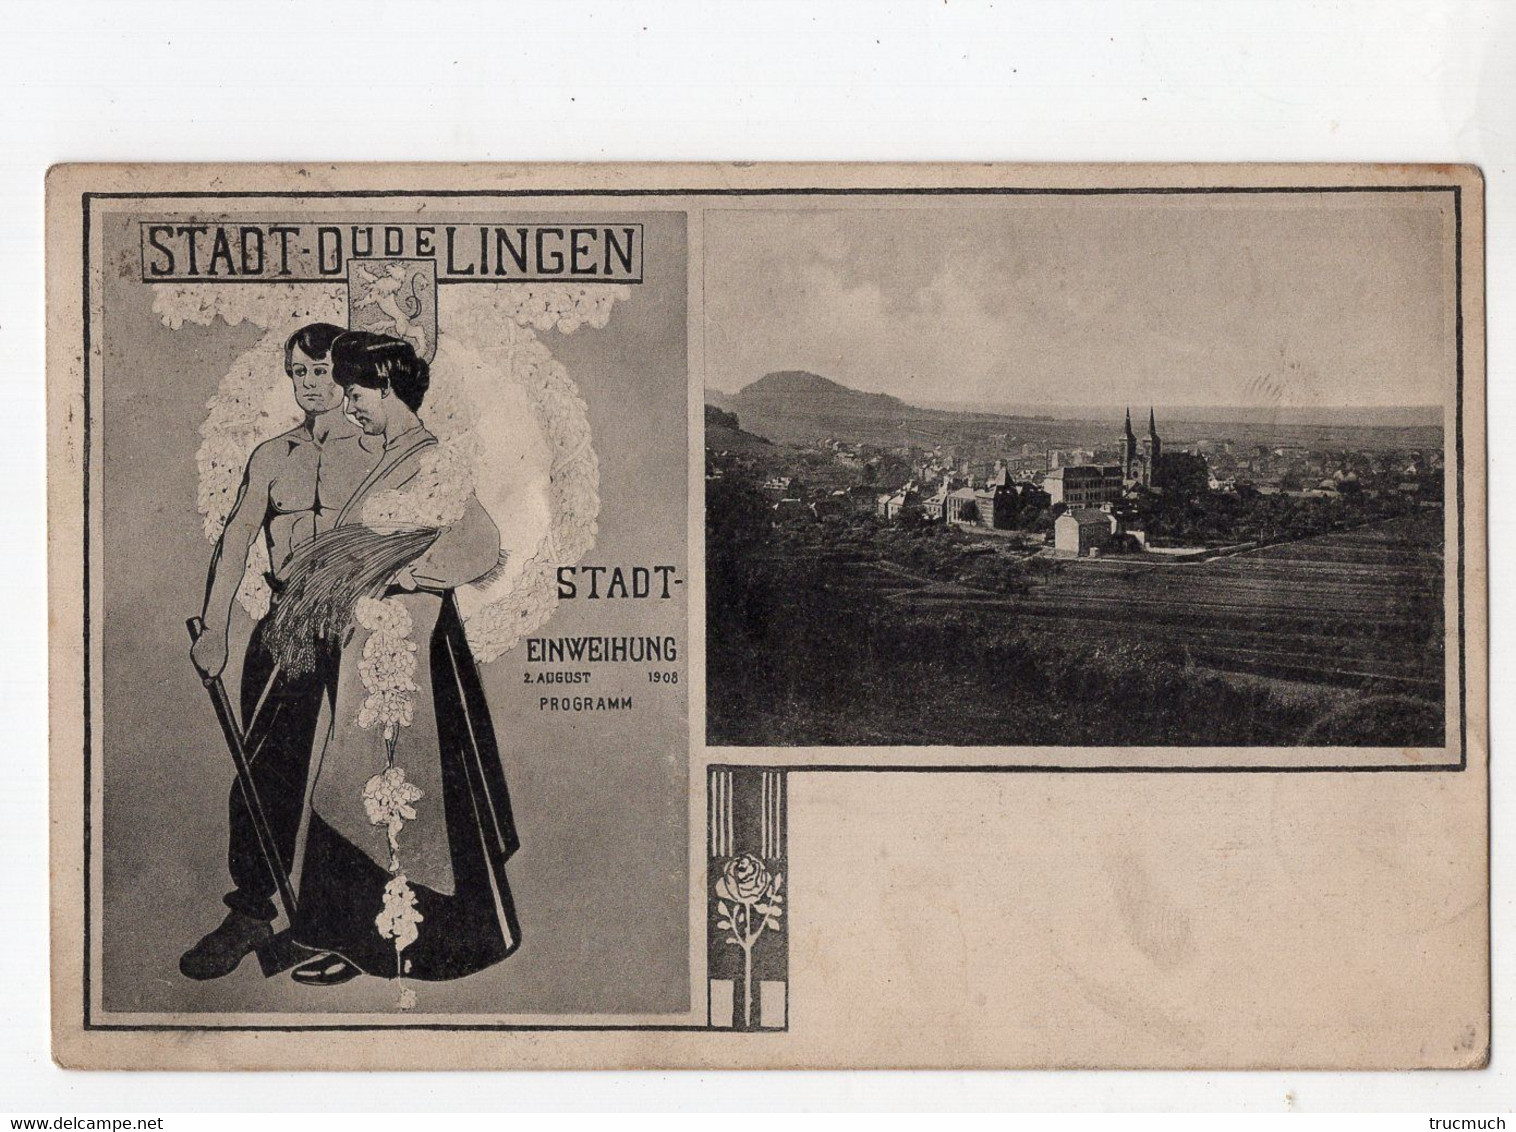 39 - STADT DÜDELINGEN - Stadt Einweihung 2. August 1908  Programm - Dudelange